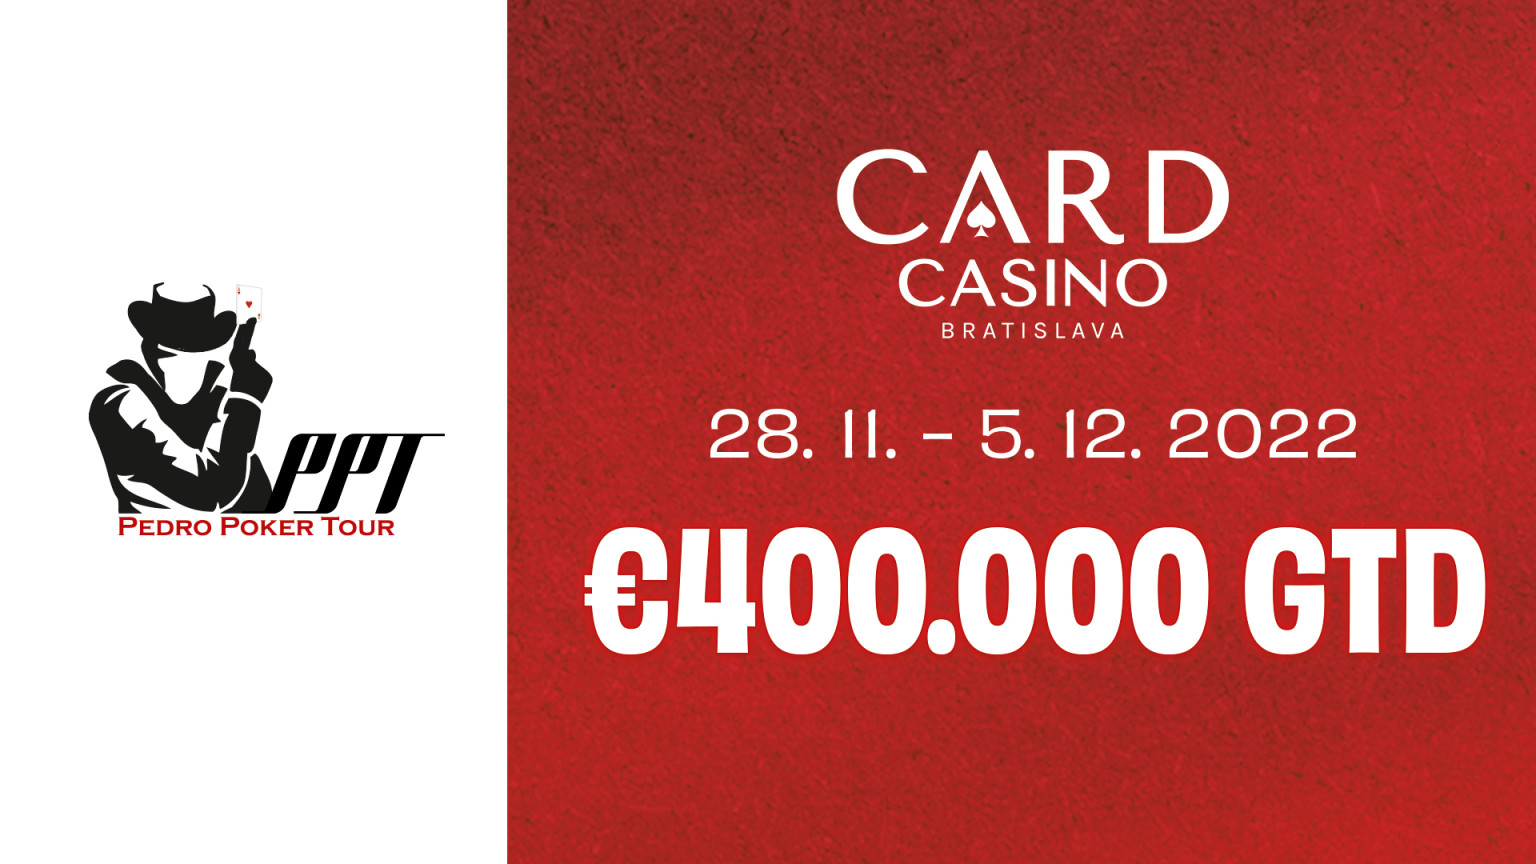 Pedro Poker Tour kicks off today with a €400,000 GTD!